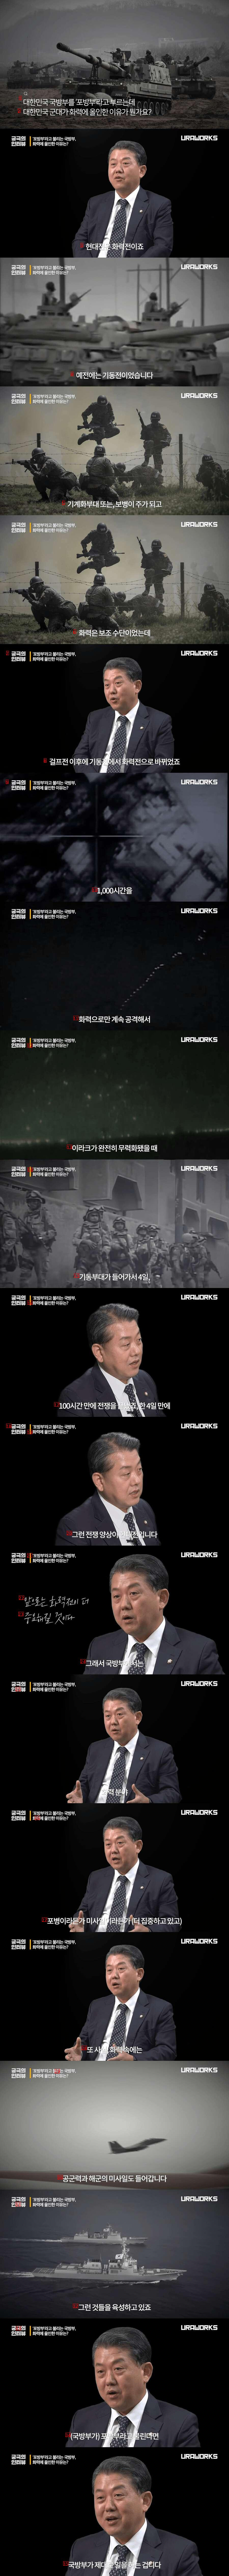 대한민국 군대가 화력에 올인 한 이유